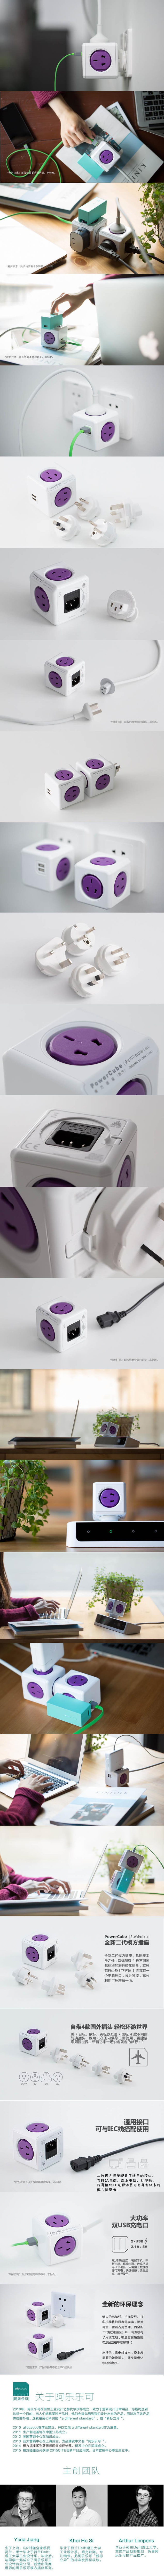 PowerCube全新二代模方魔方插座差旅办公居家 经典 紫色USB款